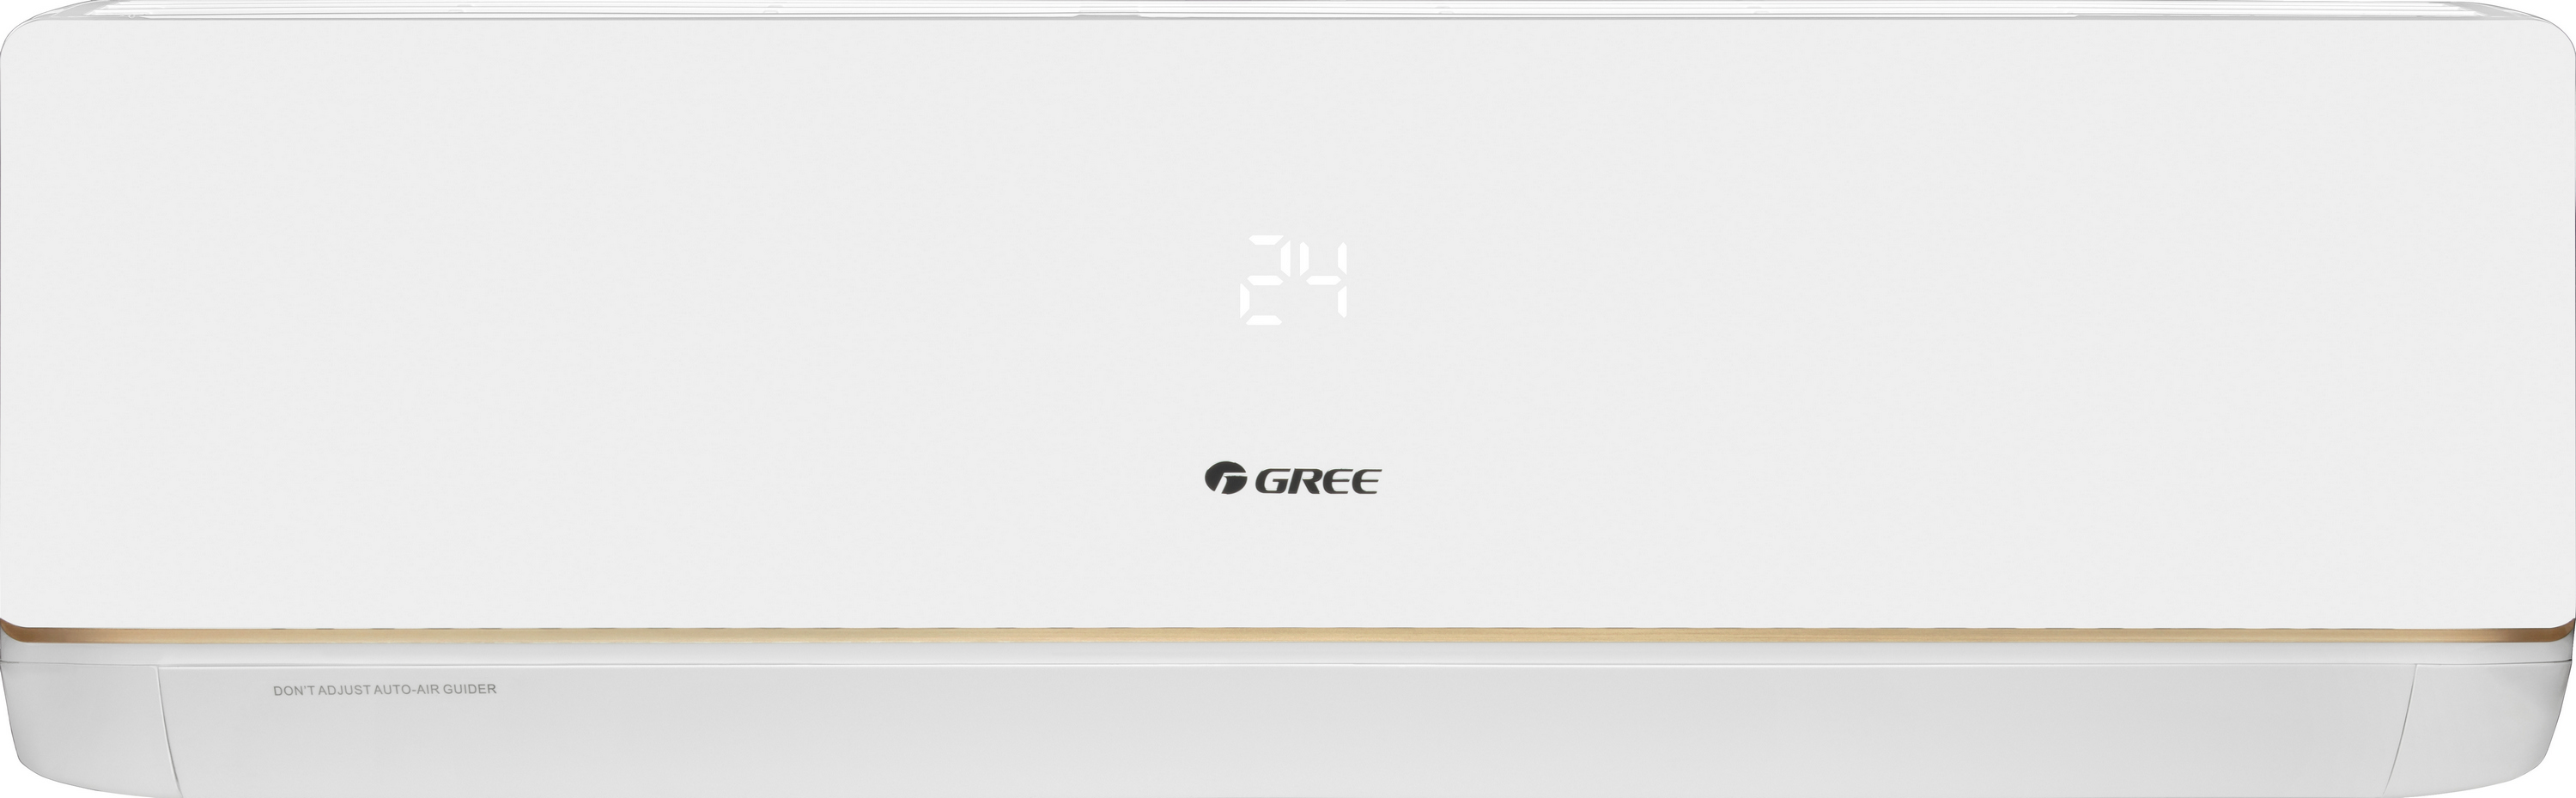 Кондиціонер спліт-система Gree Bora Inverter R32 GWH12AAB-K6DNA5A Wi-Fi ціна 35800.00 грн - фотографія 2